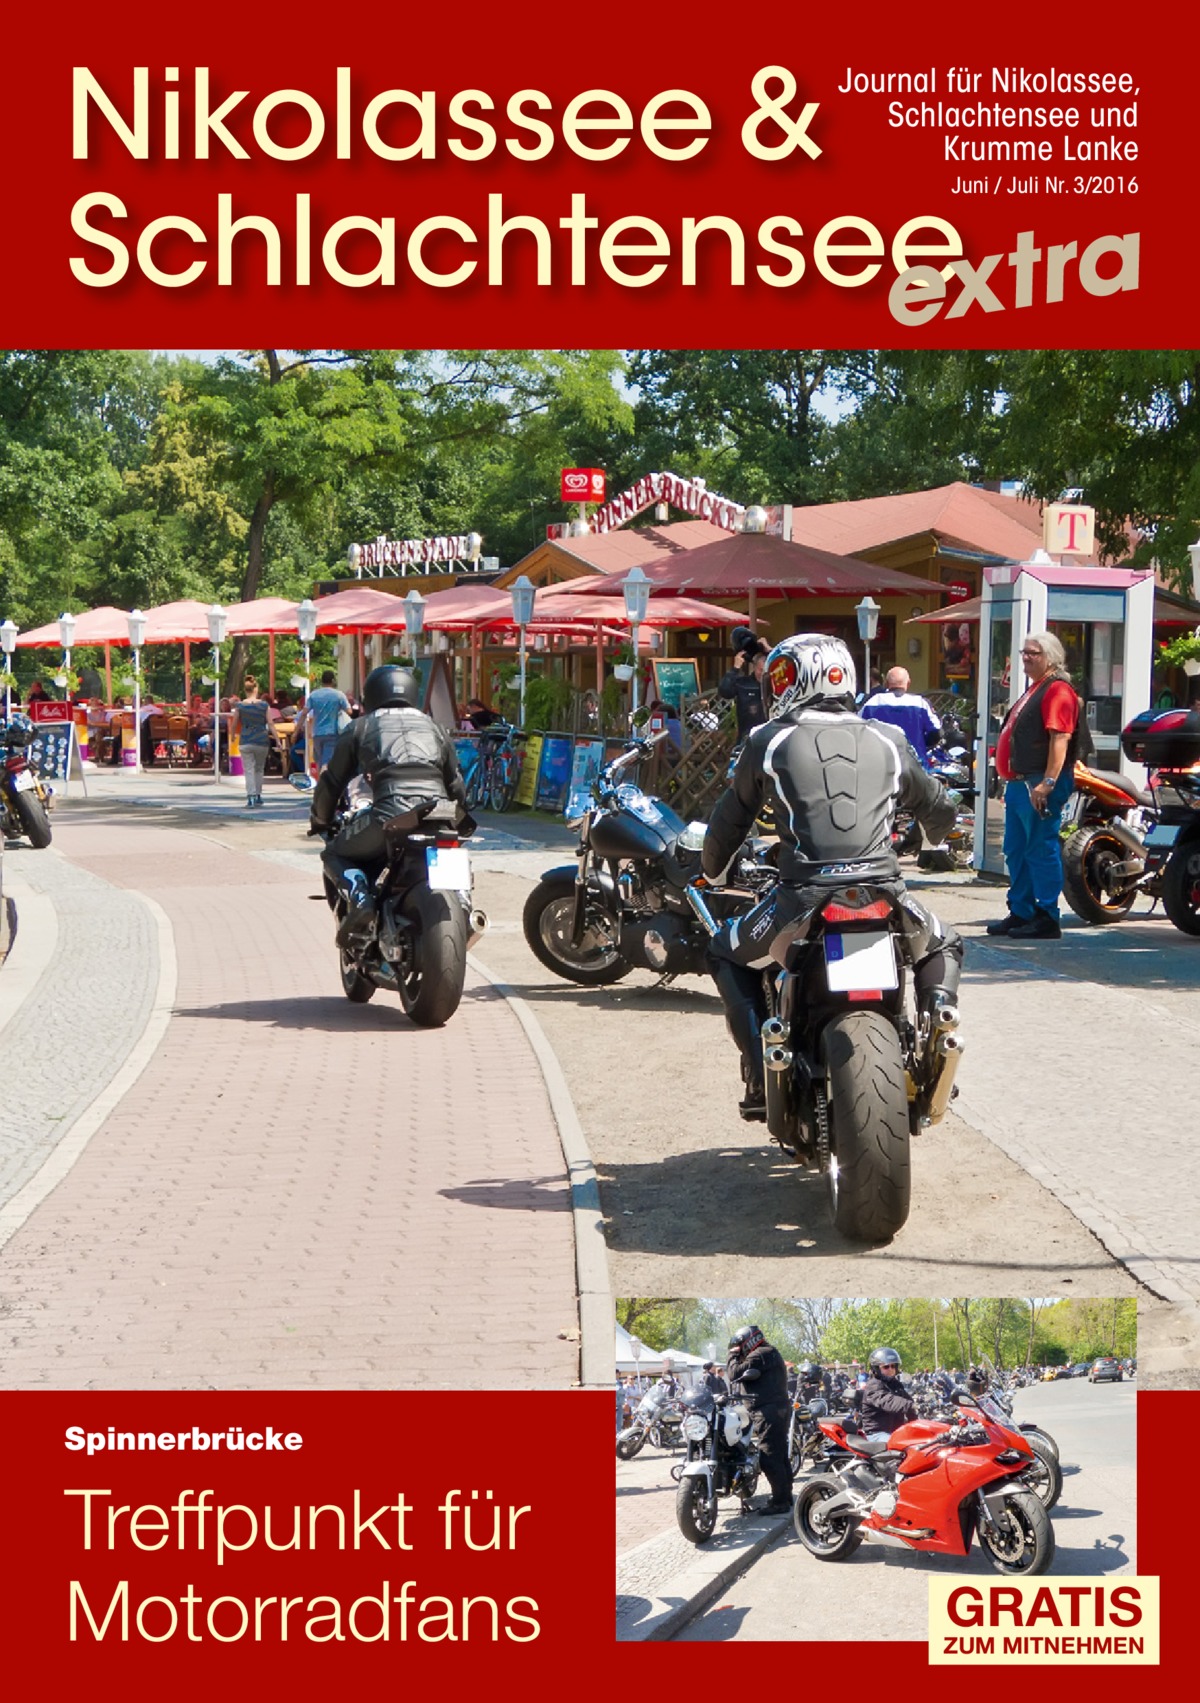 Nikolassee & Schlachtensee extra Journal für Nikolassee, Schlachtensee und Krumme Lanke Juni / Juli Nr. 3/2016  Spinnerbrücke  Treffpunkt für Motorradfans  GRATIS  ZUM MITNEHMEN